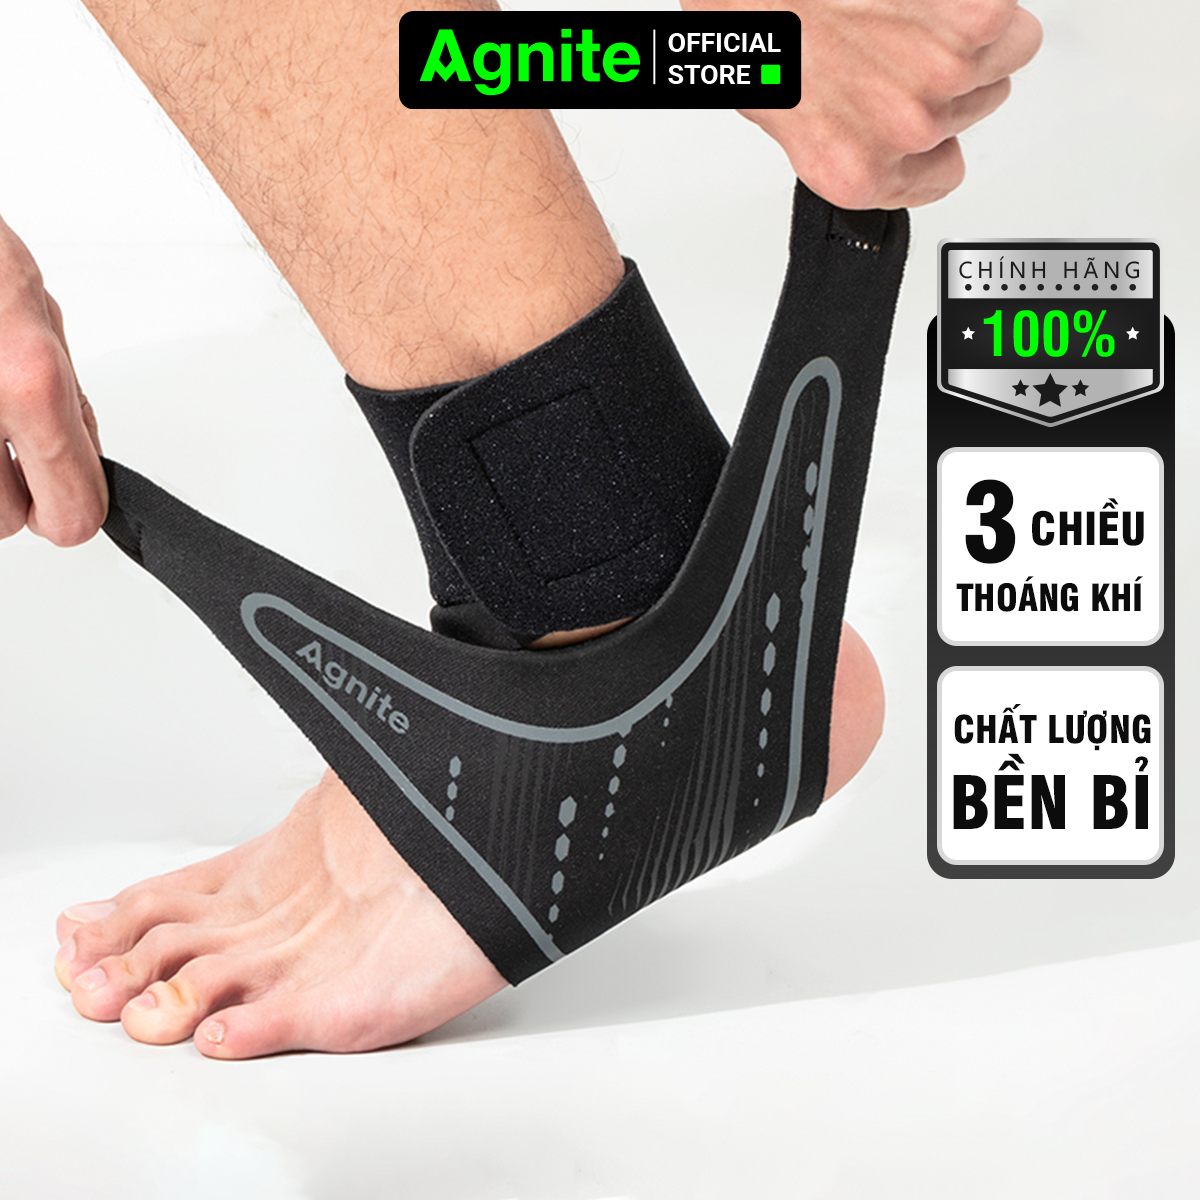 [1 đôi] Đai cổ chân, băng quấn bảo vệ mắt cá chân Agnite chính hãng, cao cấp, thích hợp sử dụng nhiều môn thể thao